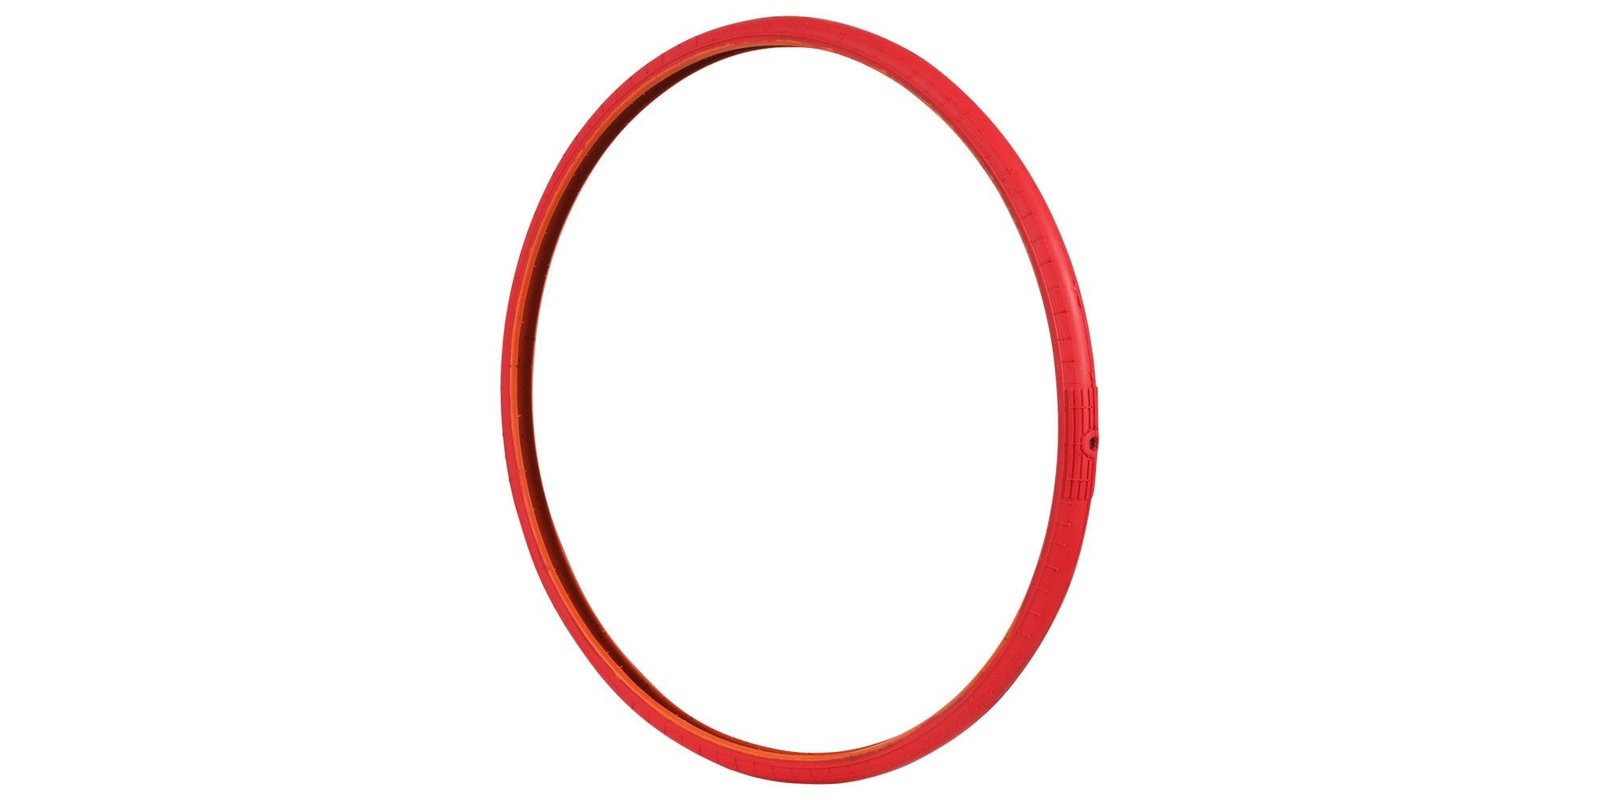 Obrázek produktu náhradní duše TUbliss 18" (vnější - červená), Nuetech - USA RL18